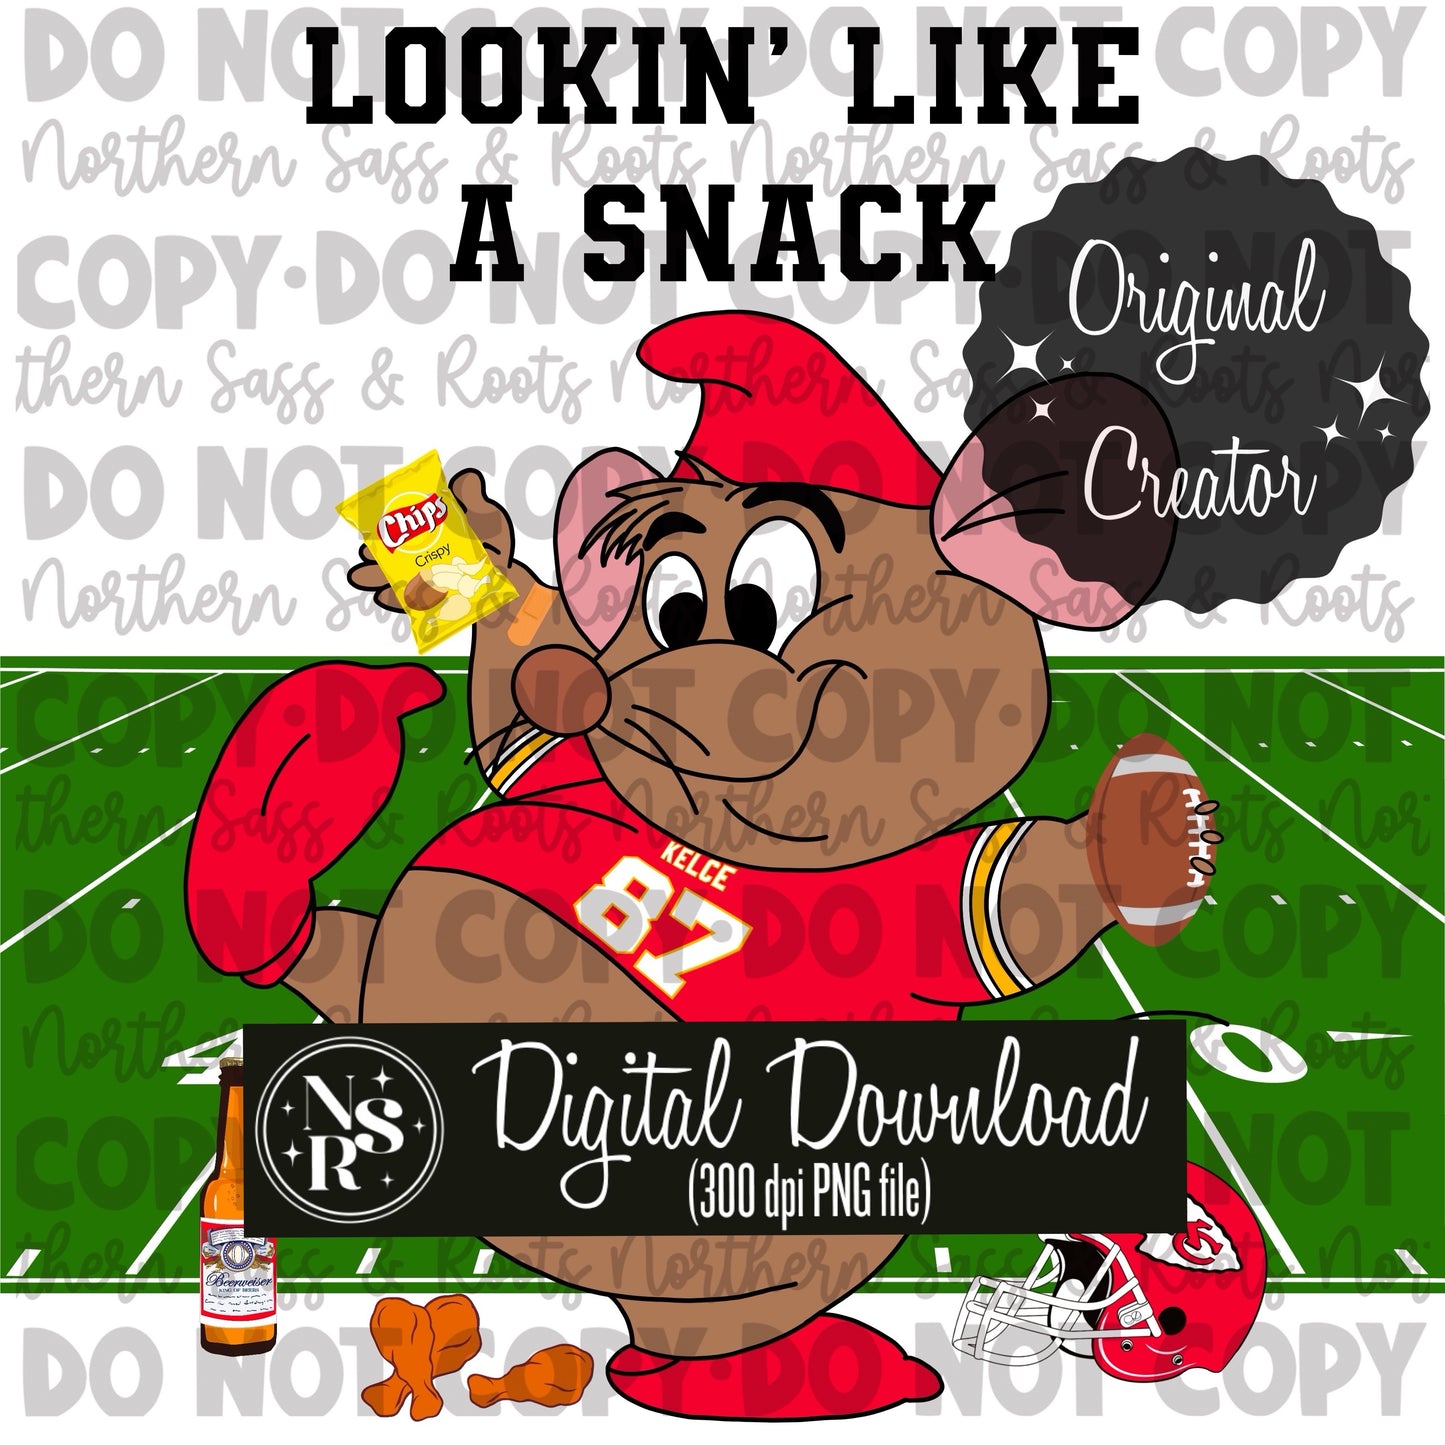 Lookin’ Like A Snack V.2 (Gus-Kelce): Digital Download